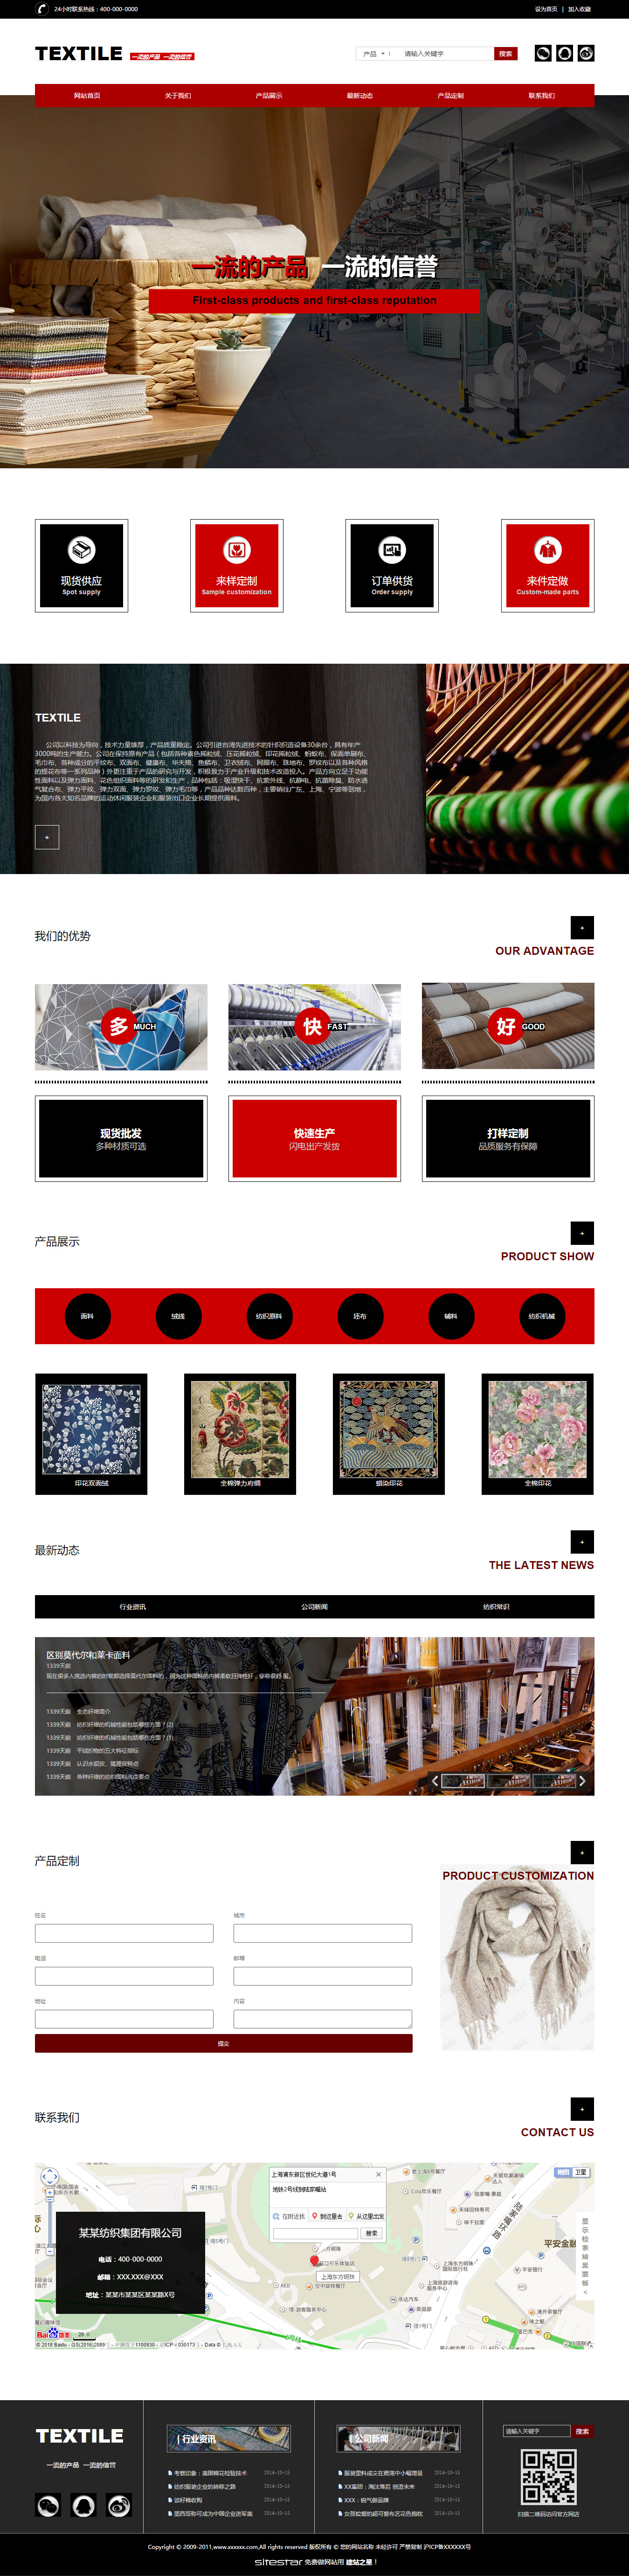 企业网站精美模板-textile-305